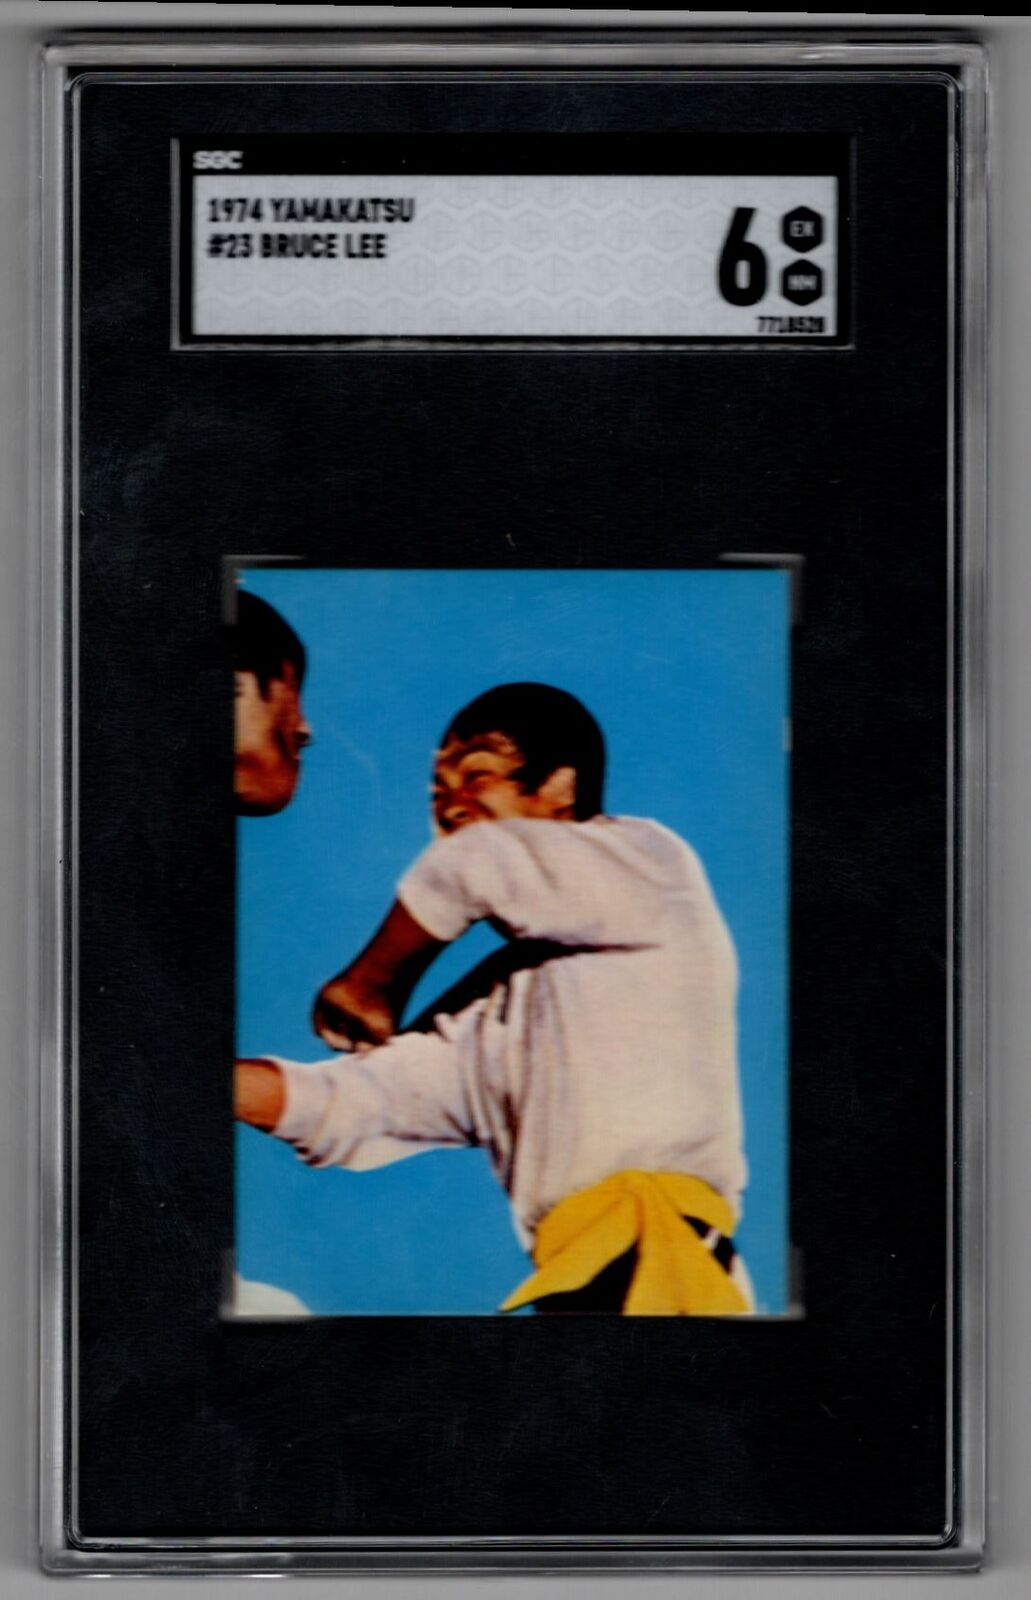 1974 Yamakatsu Bruce Lee SGC 6 #23